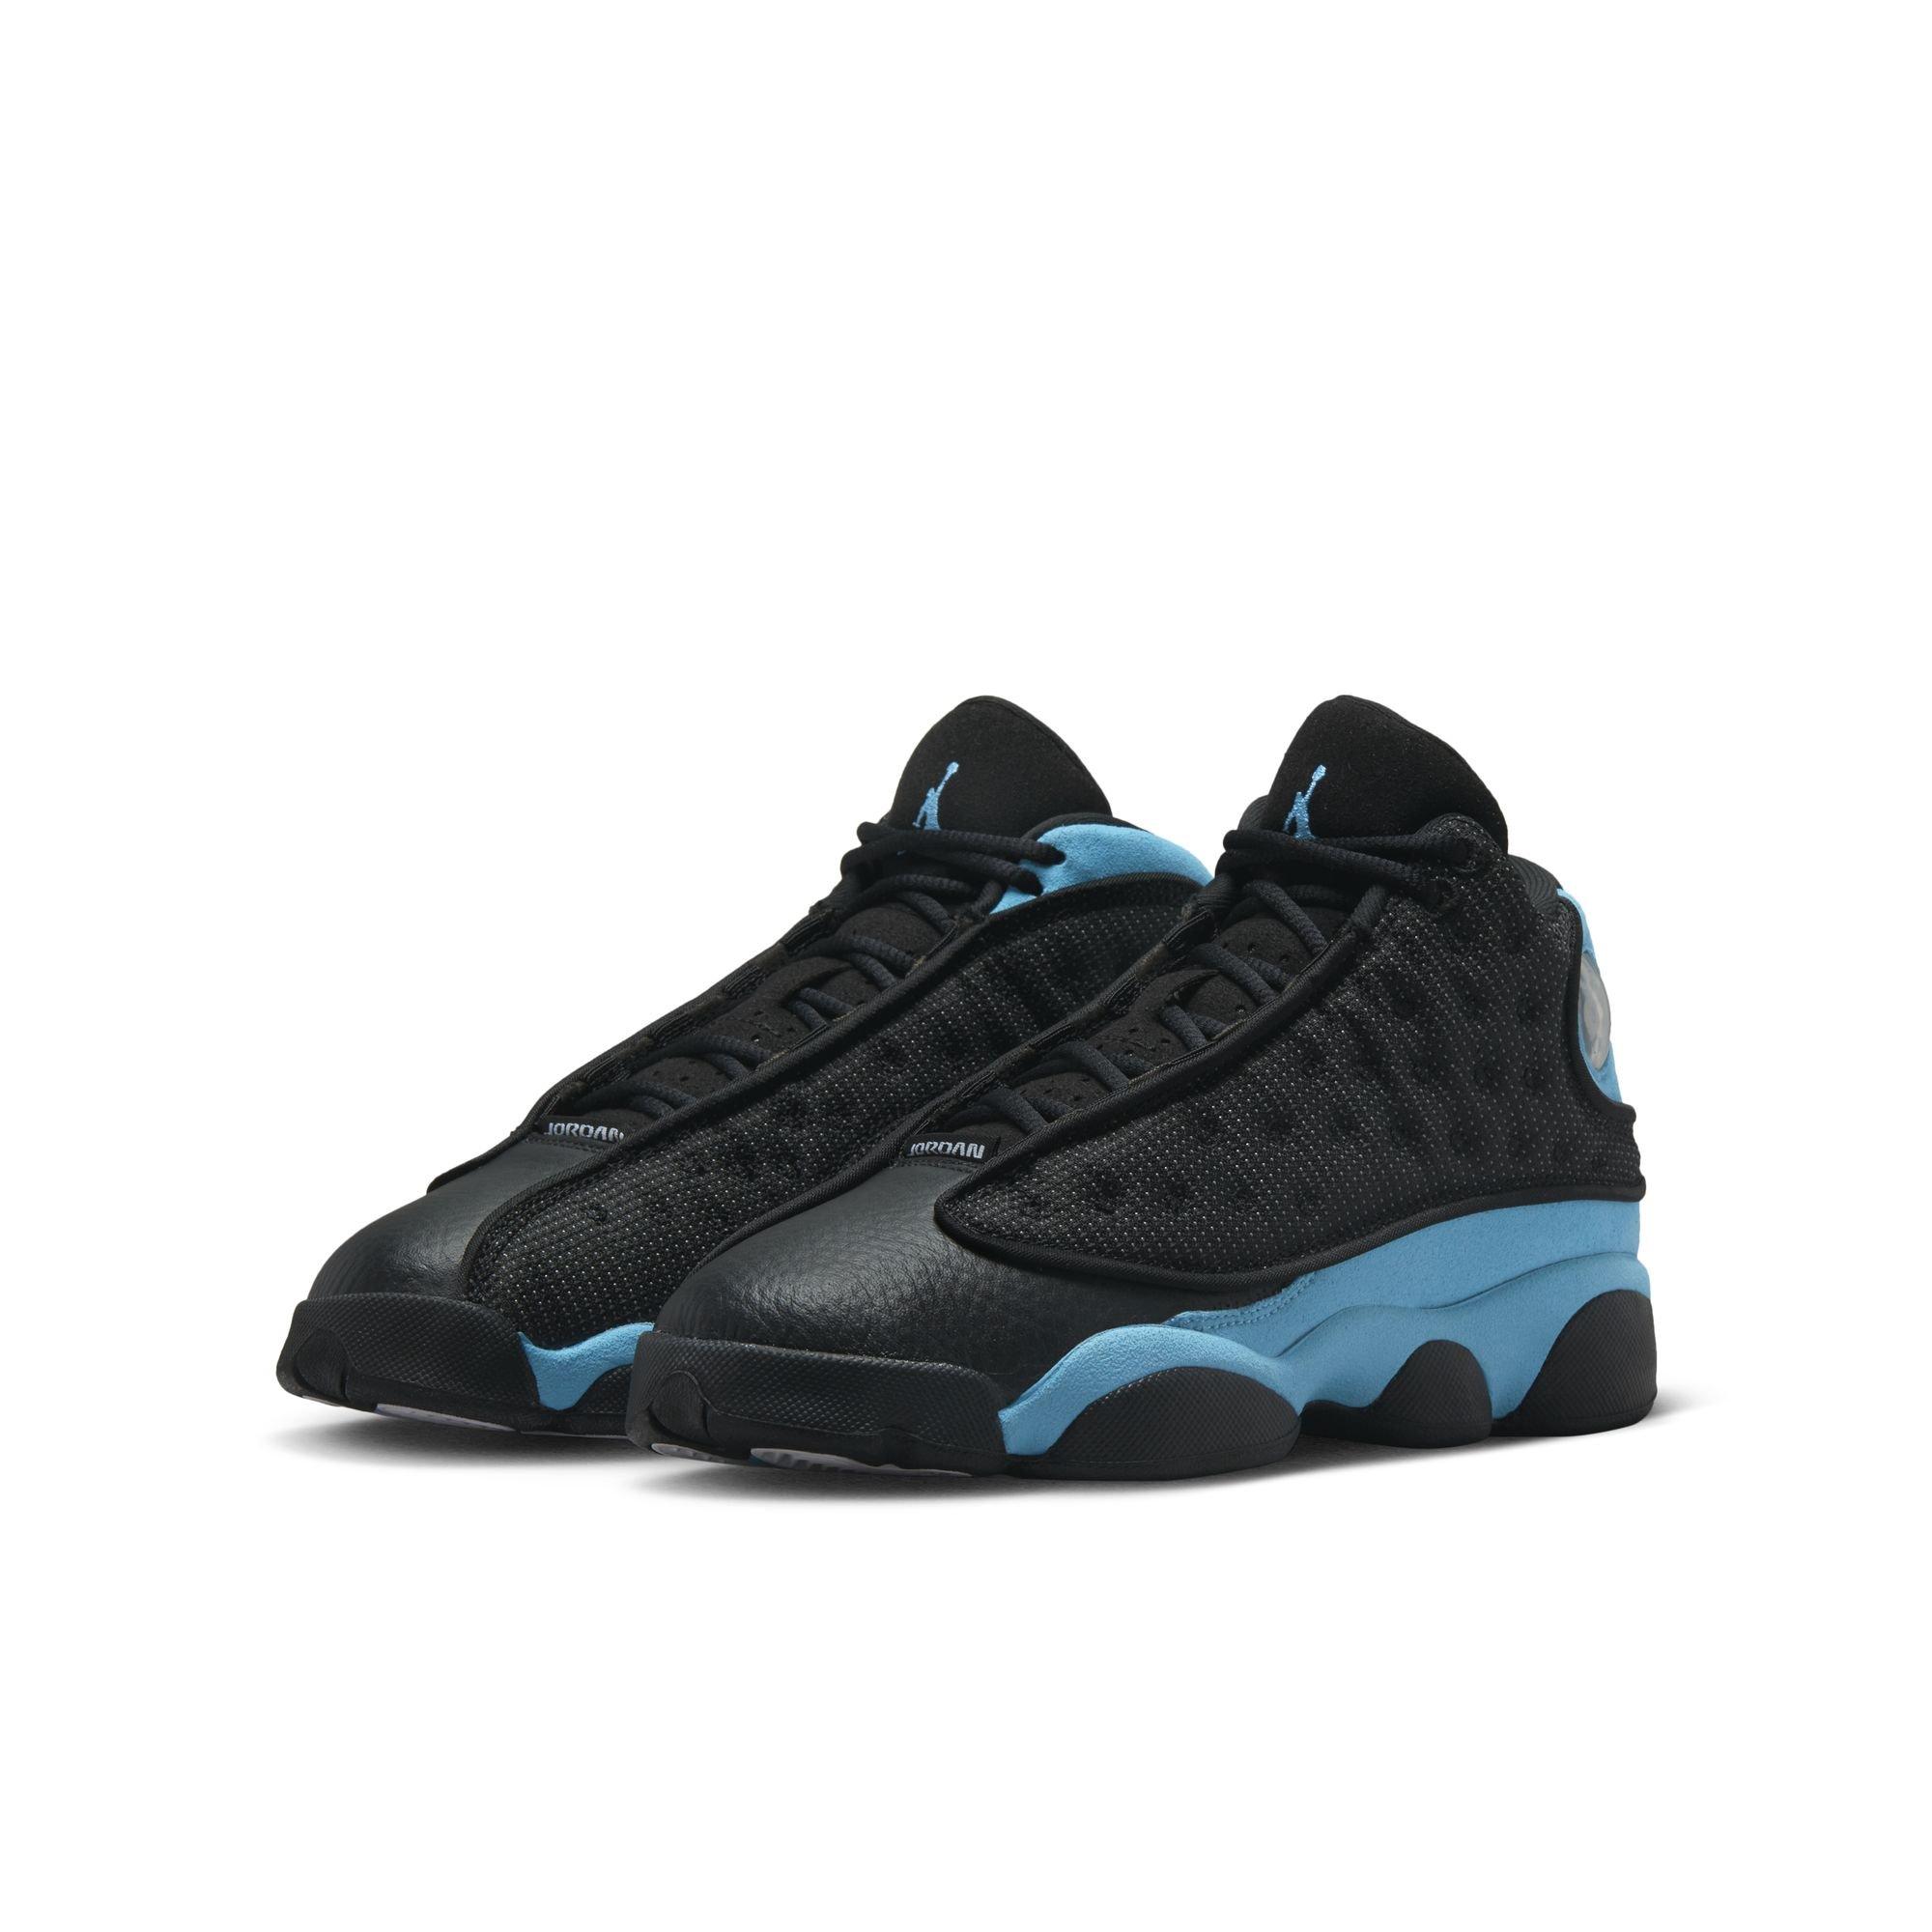 Jordan mens 13 Retro Shoes, Black/University Blue